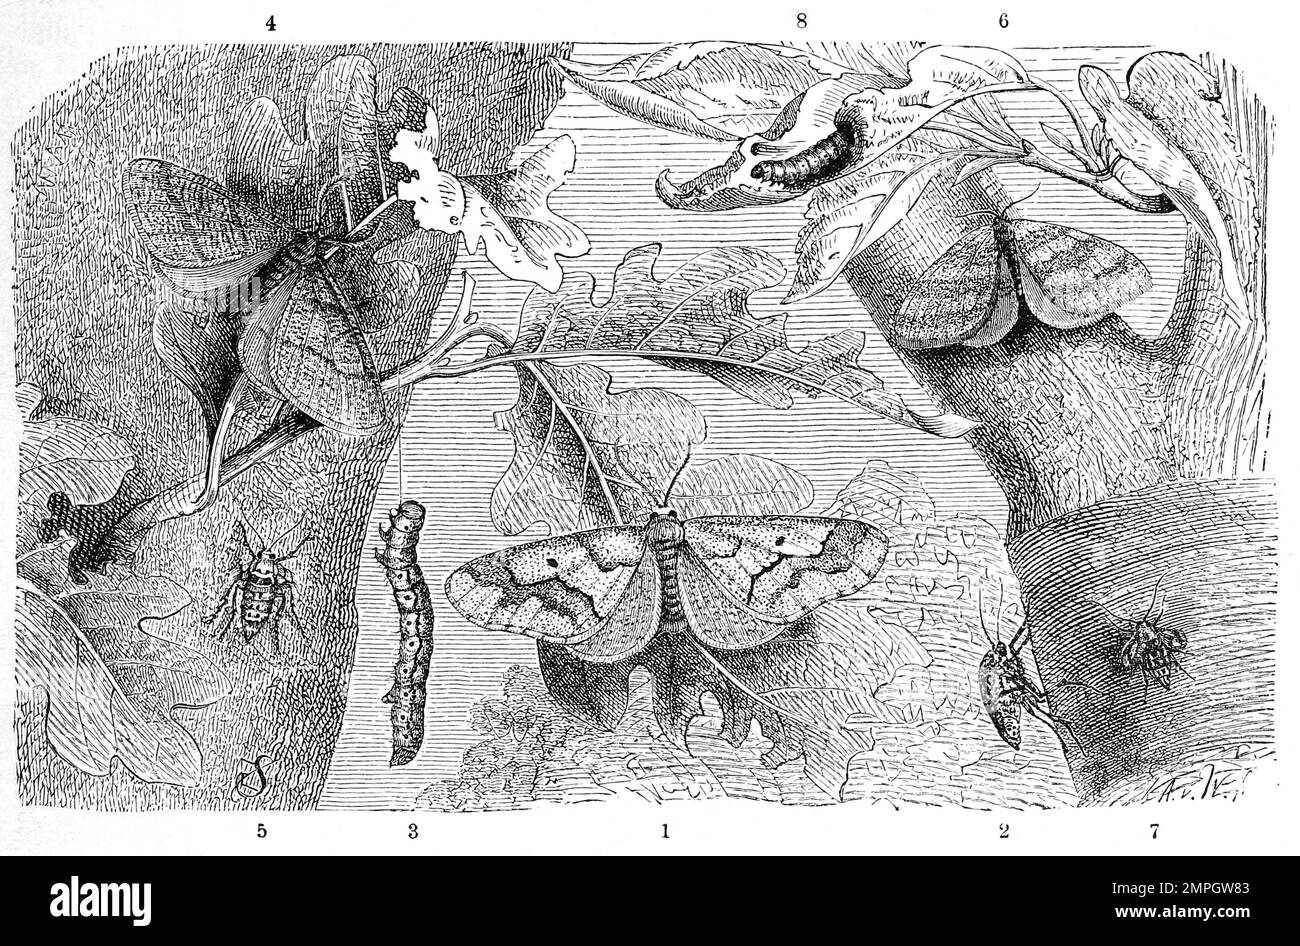 Insekten, 1-3. Große Frostspanner, Erannis defoliaria ist eine Art aus der Familie der Spanner, 4-8. Kleiner Frostspanner, Operophtera brumata, Historisch, digital restaurierte Reproduktion von einer Vorlage aus dem 19. Jahrhundert Stock Photo